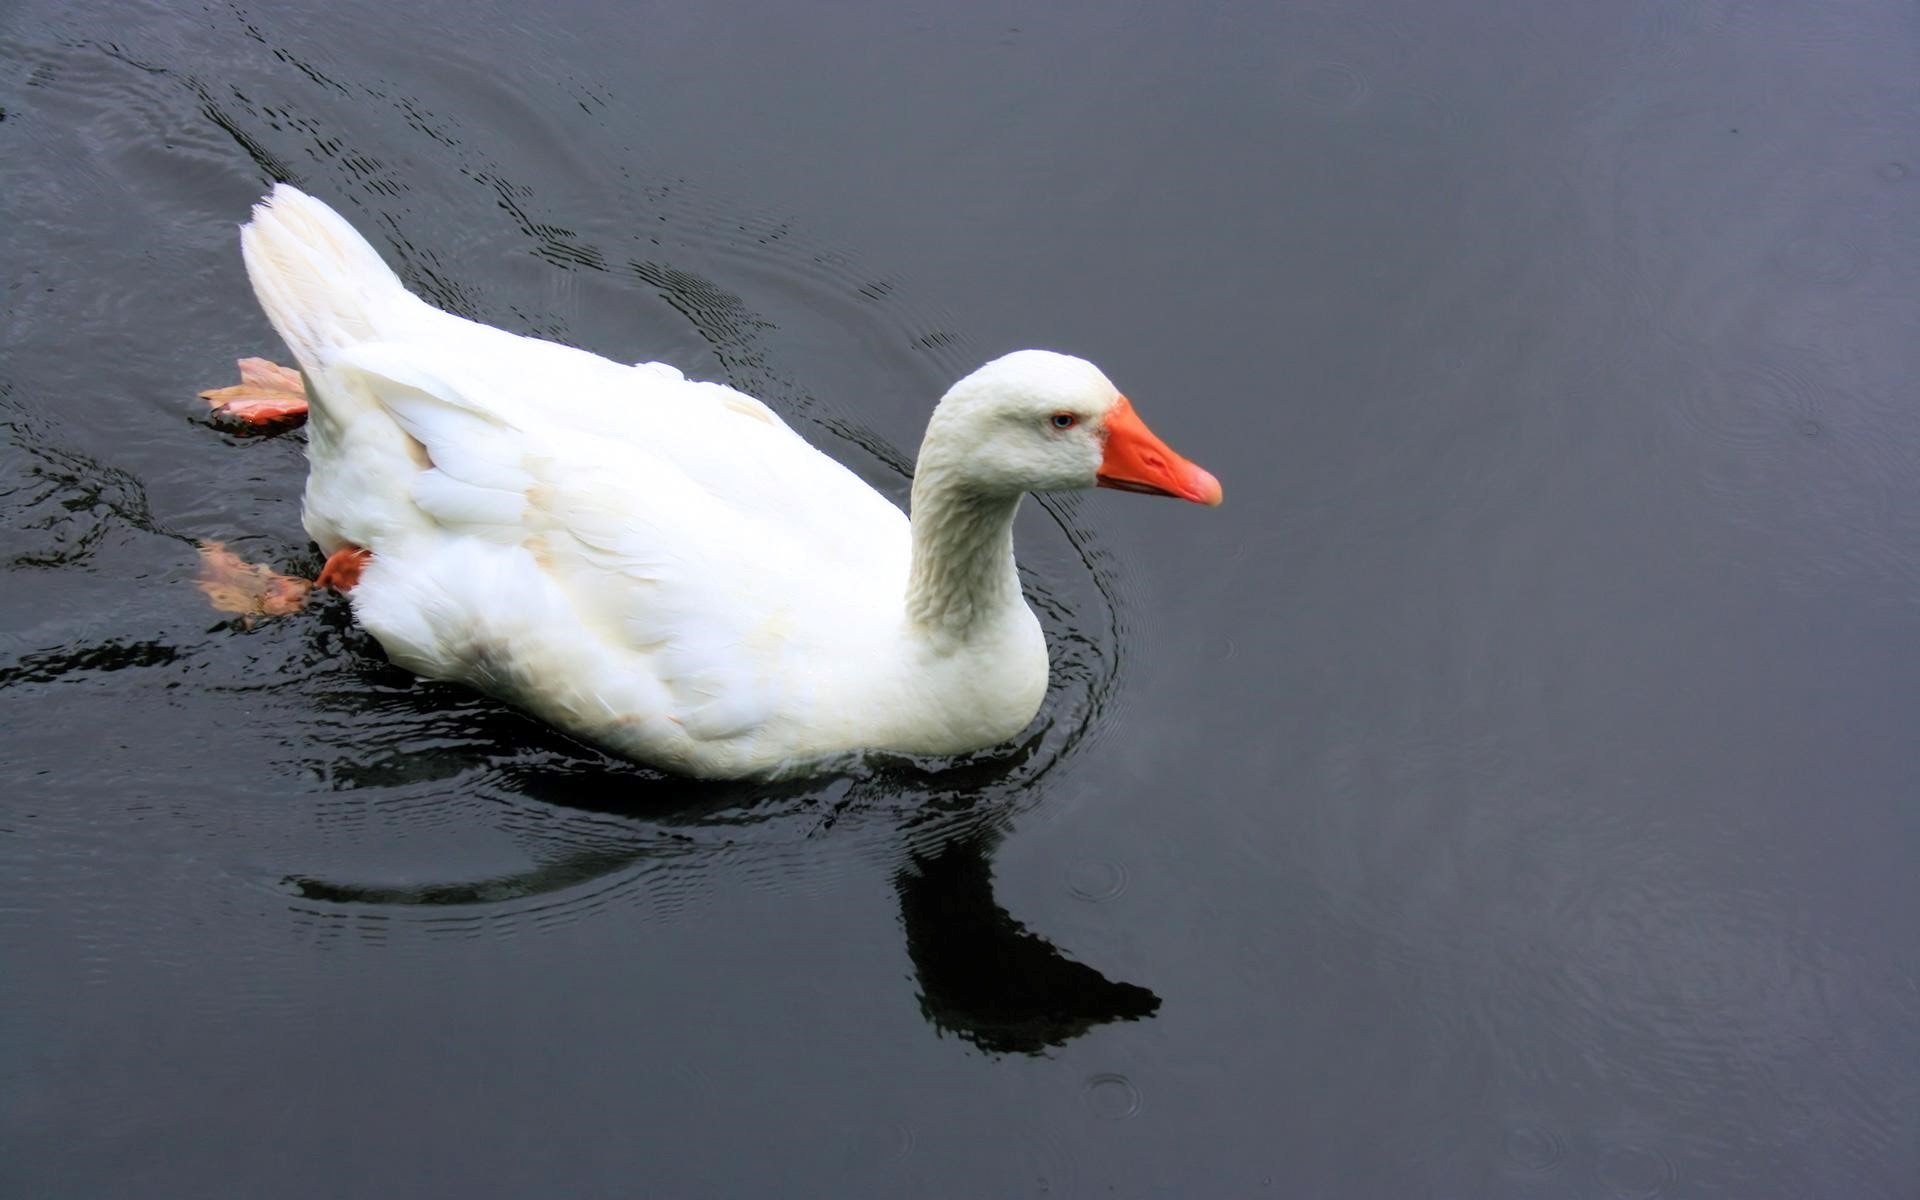 Swimming ducks photo